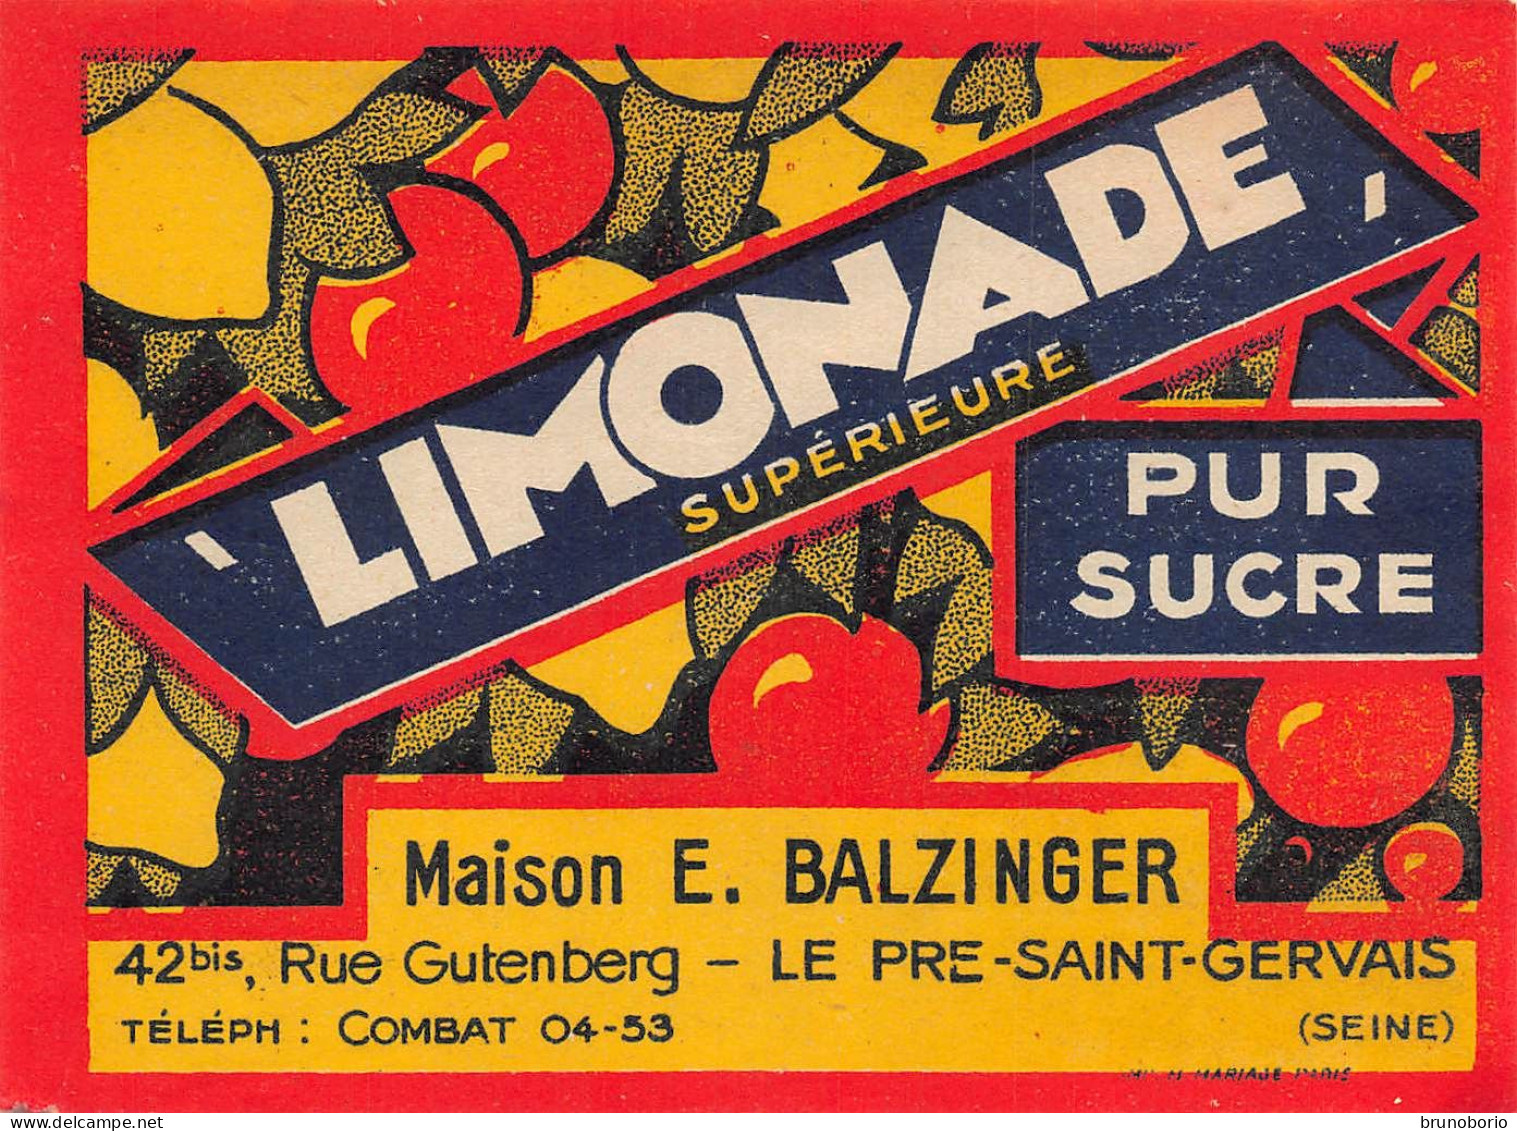 00147  "LIMONADE SUPERIEURE PUR SUCRE - MAISON E. BALZINGER - LE PRE-SAINT.VVERVAIS /SEINE)"  ETICH. ORIG - Fruit En Groenten